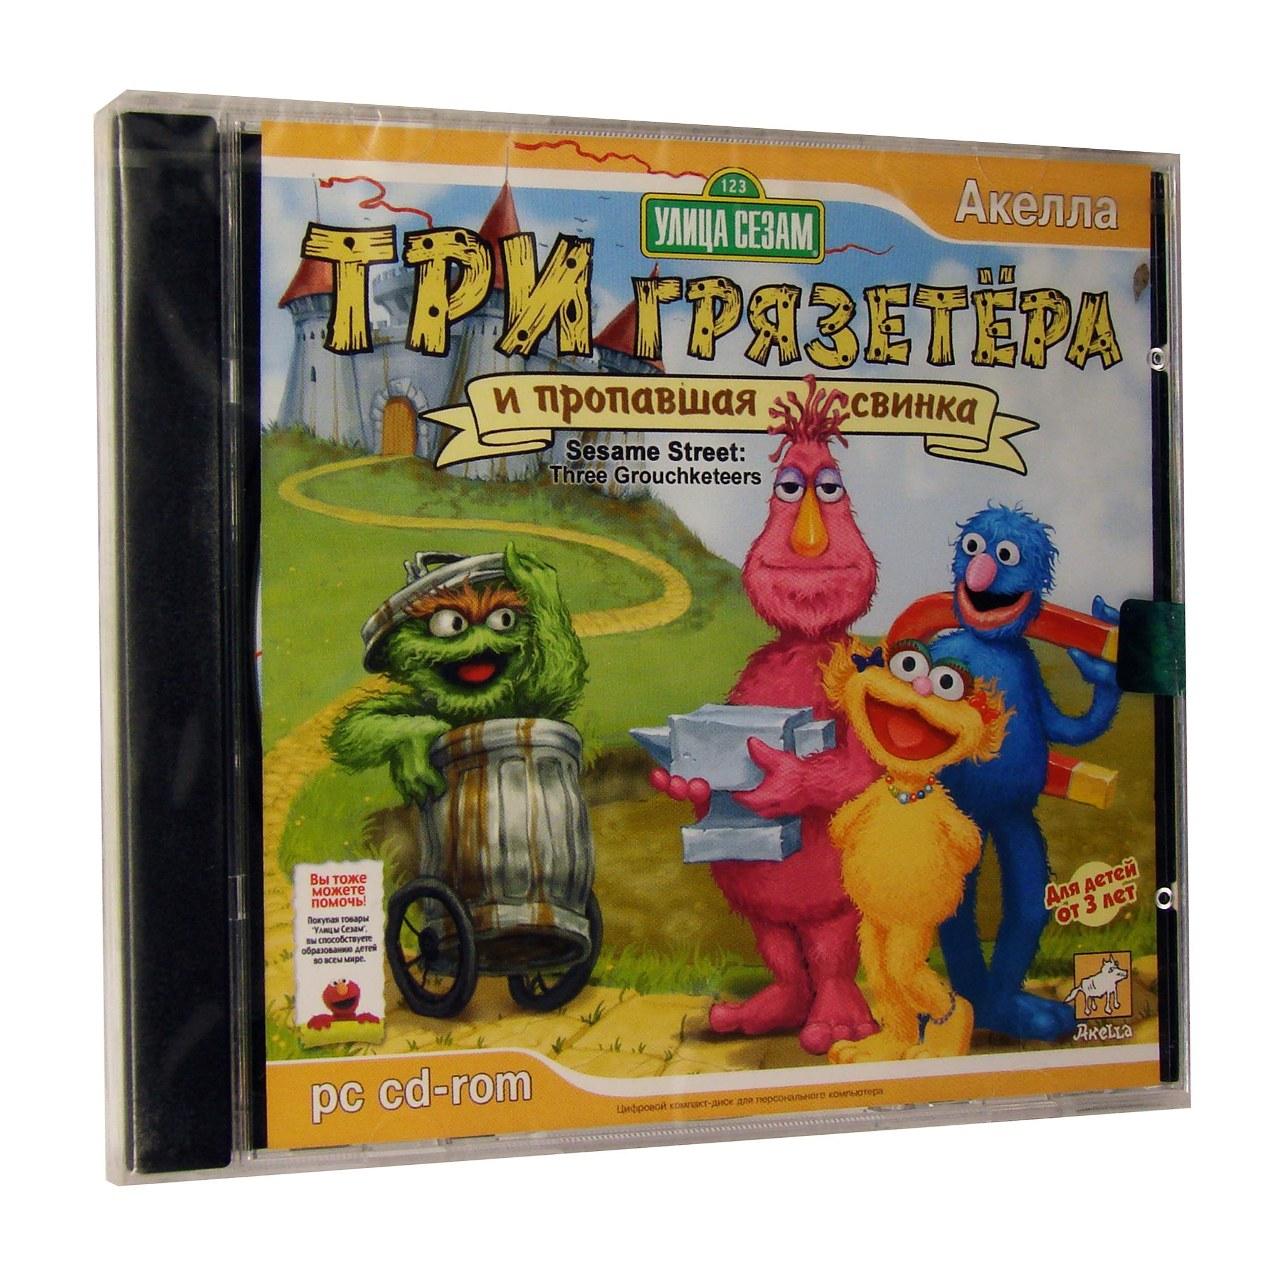 Компьютерный компакт-диск Улица Сезам: Три грязетёра и пропавшая свинка. (ПК), фирма "Акелла", 1CD